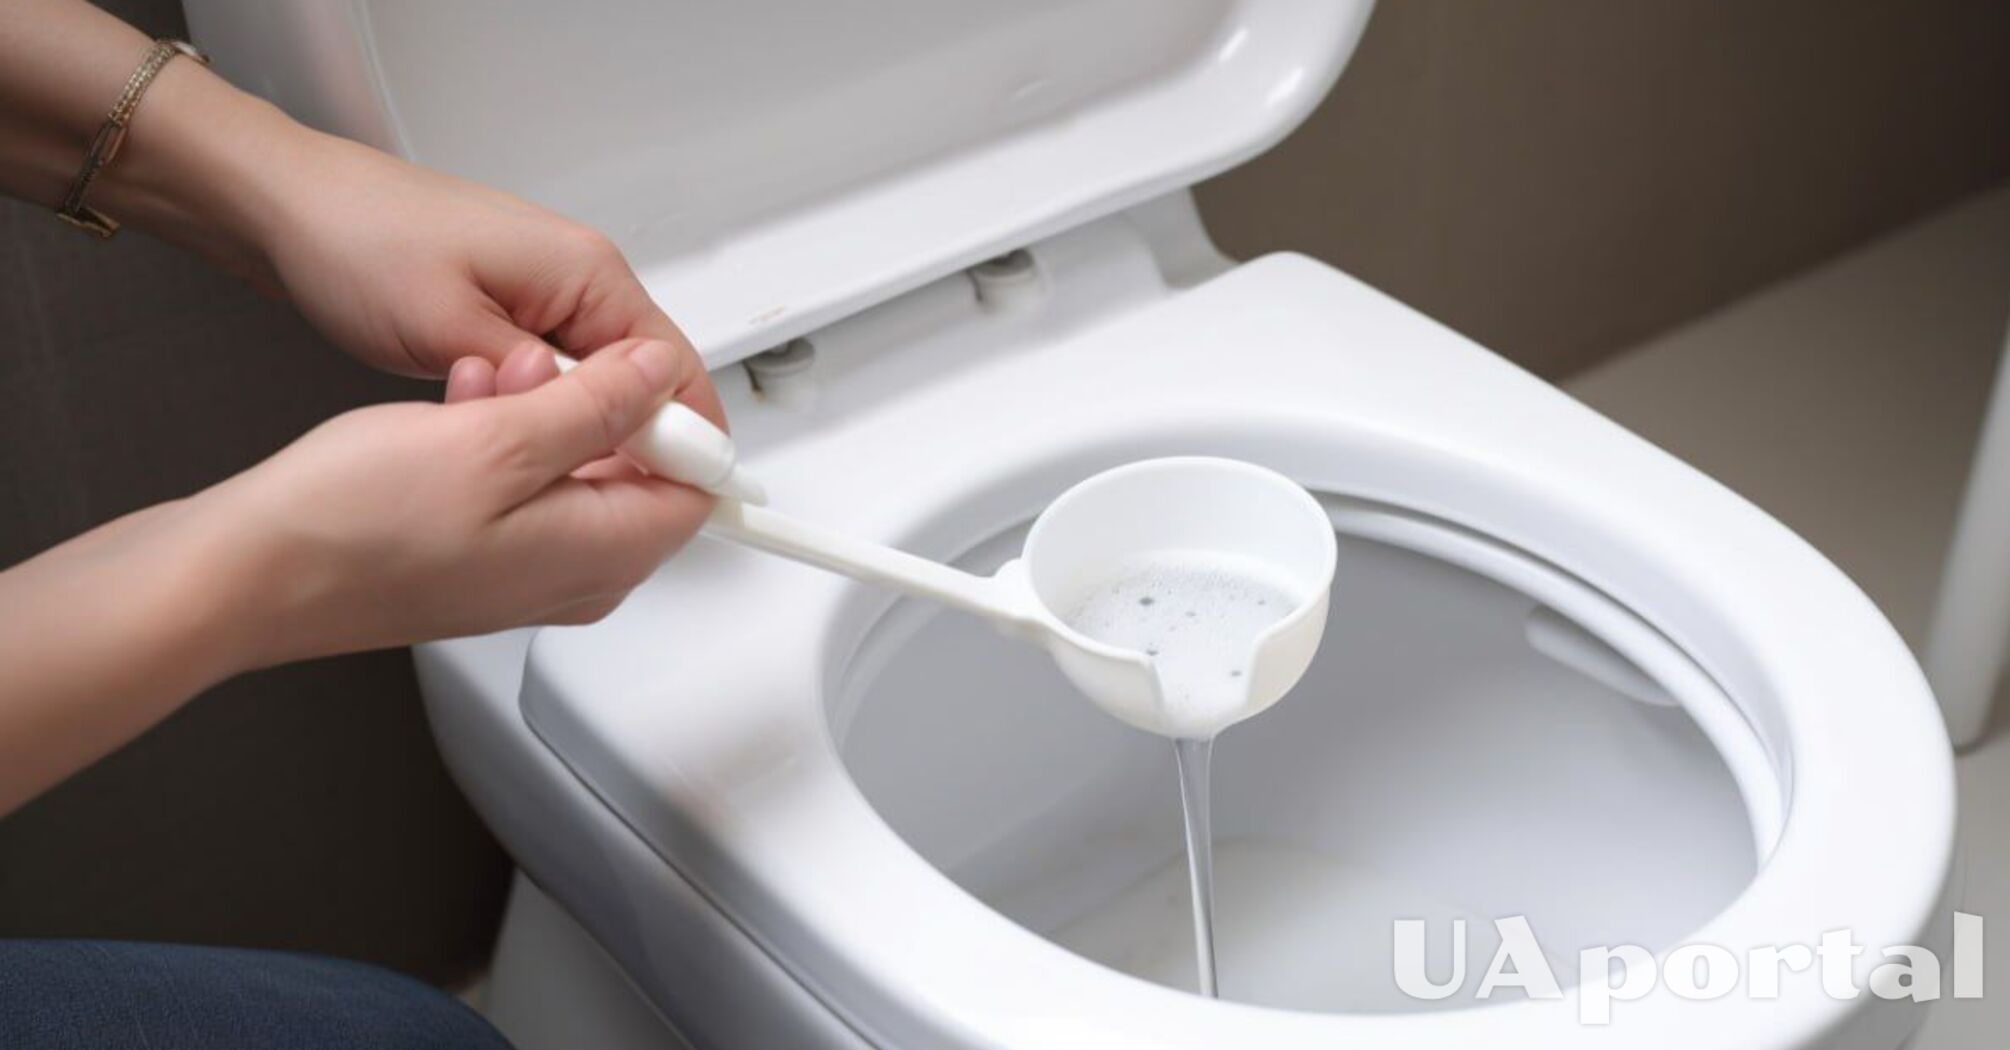 Produkt za grosze umyje toaletę, aż zabłyśnie: trik od pracowników sprzątających